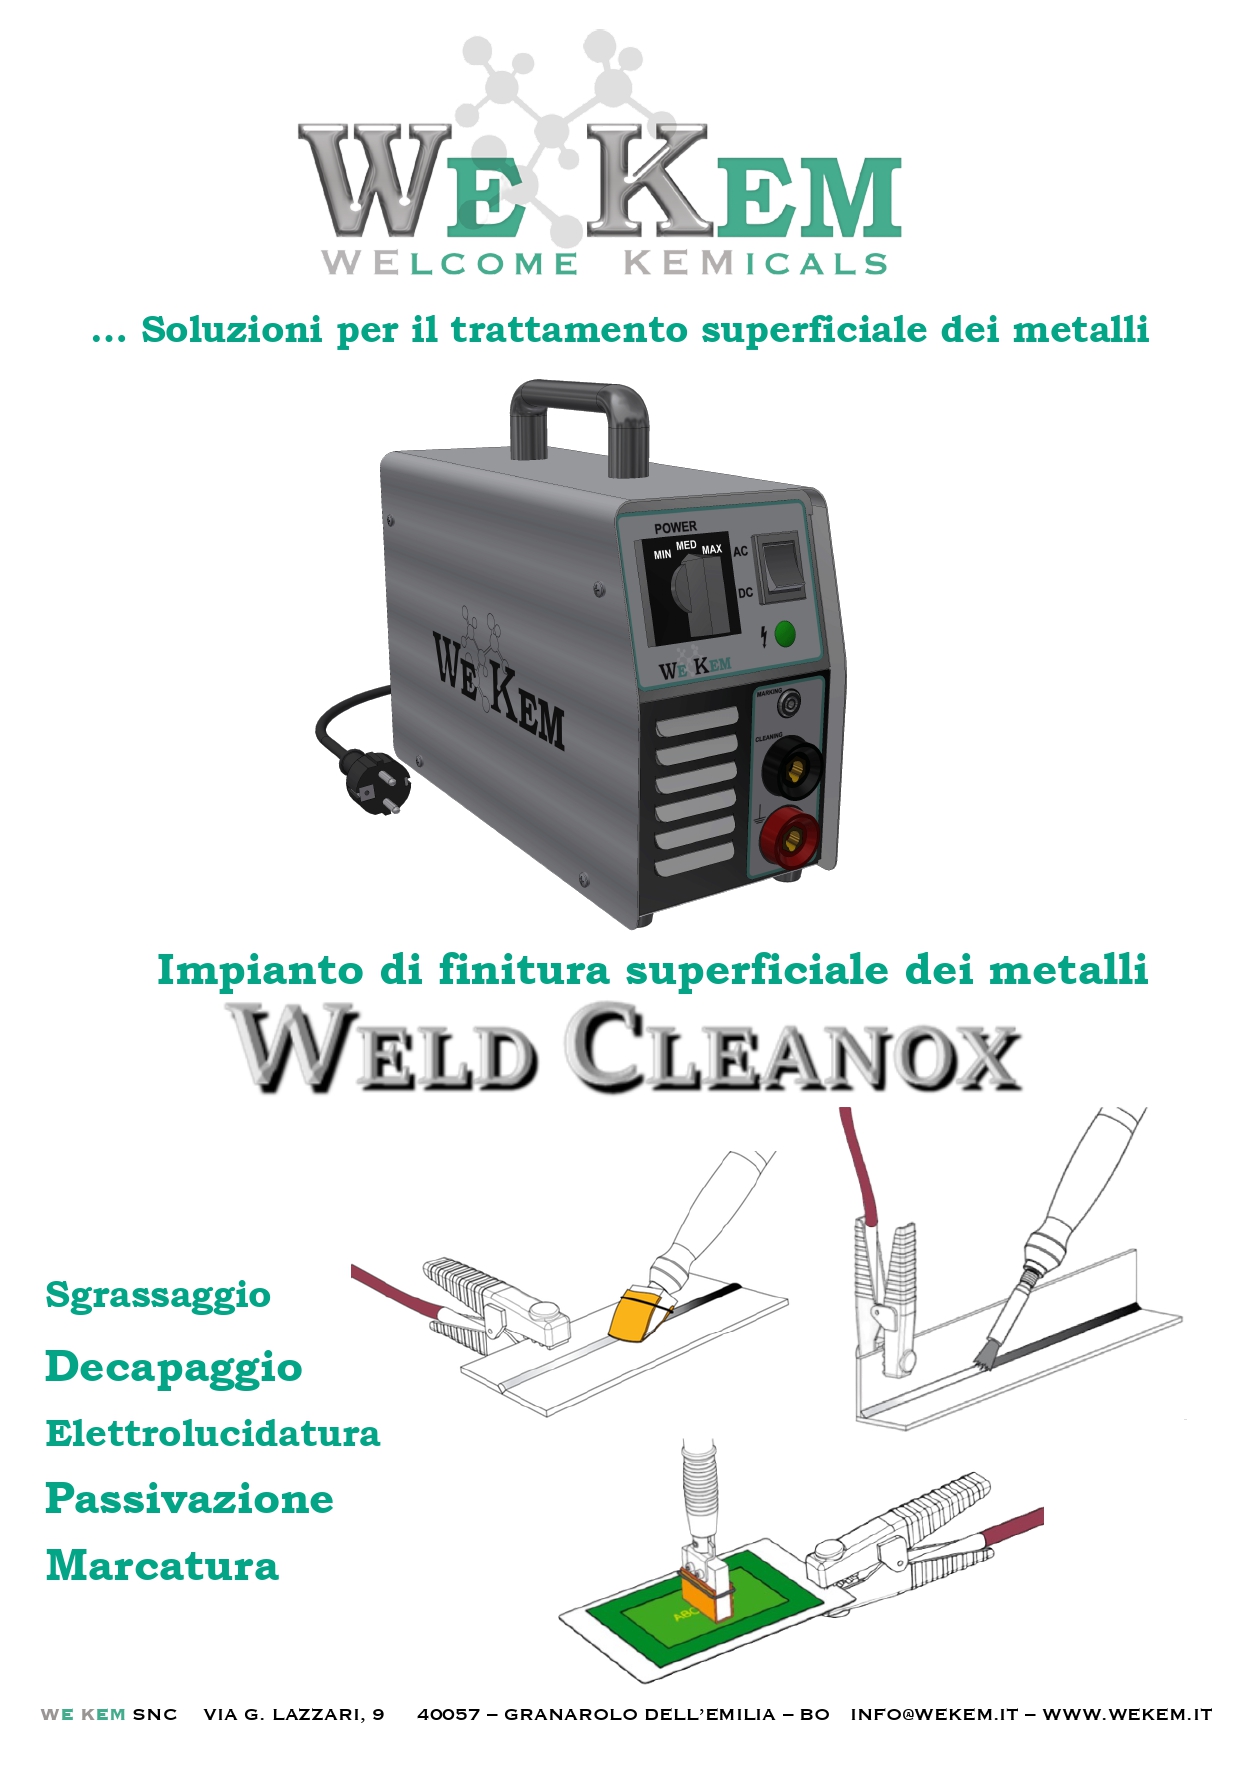 WE KEM - Weld Cleanox_page-0001